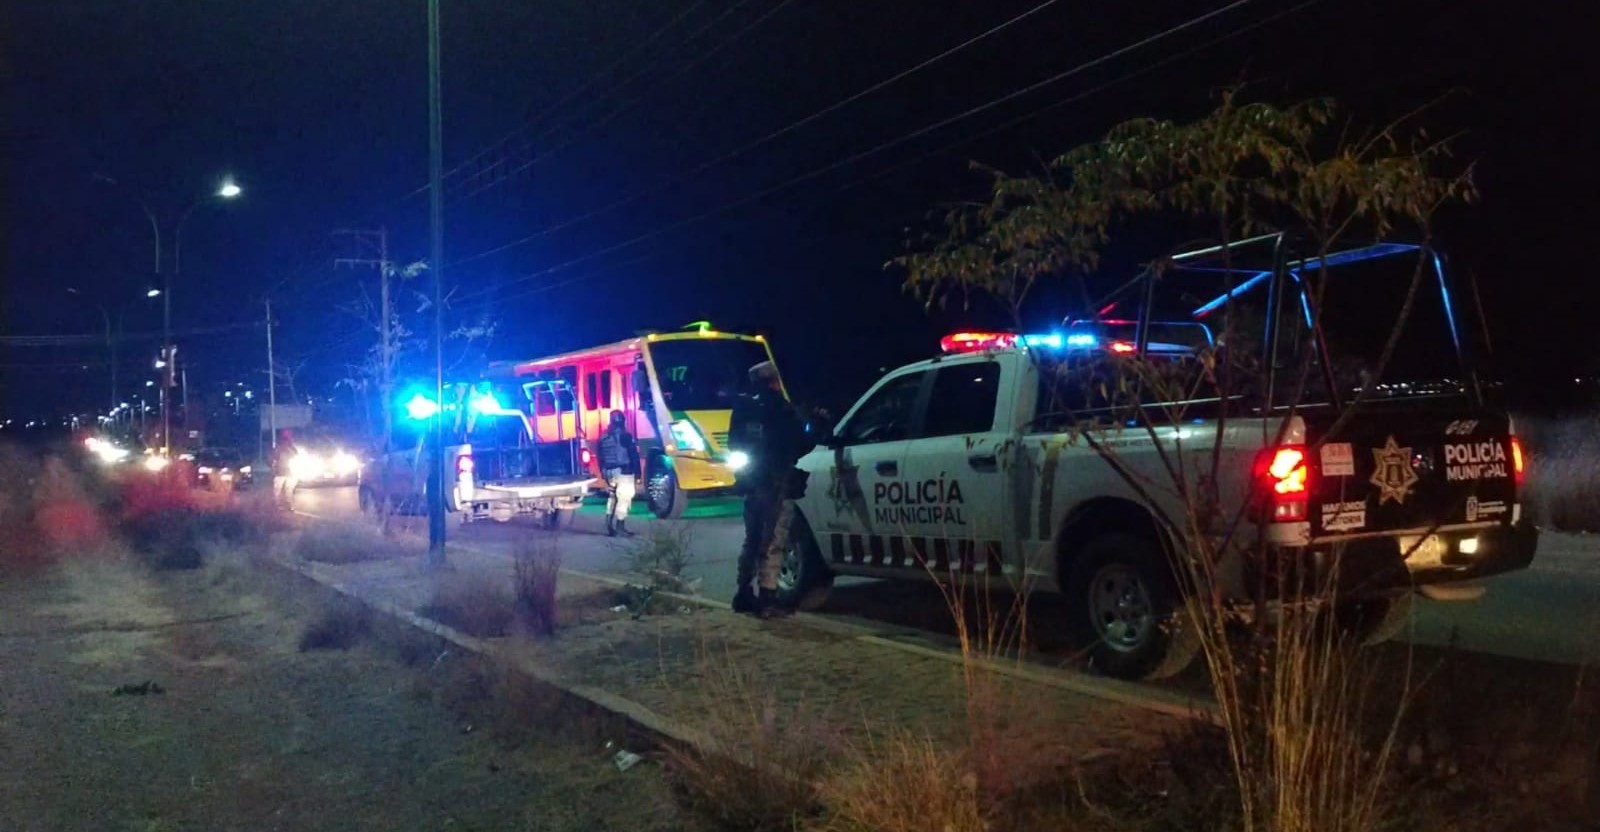 El incidente pasó el miércoles a las 7:35 de la noche en la avenida Prolongación Barones. | Foto: Cortesía